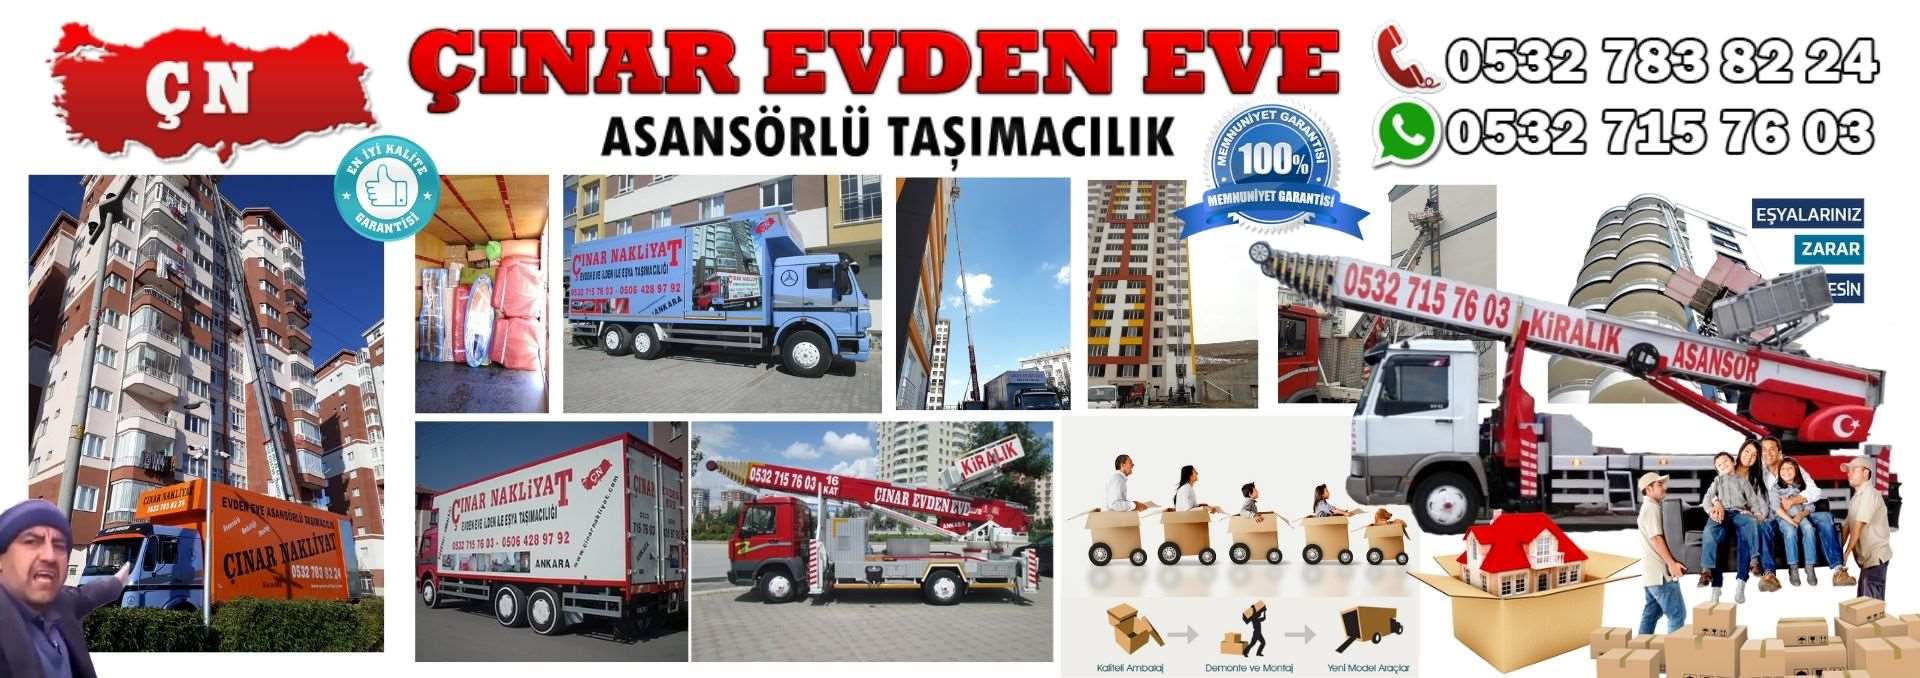 Ankara Kızılcahamam Evden Eve Asansörlü Ev Eşyası Taşıma 0532 715 76 03